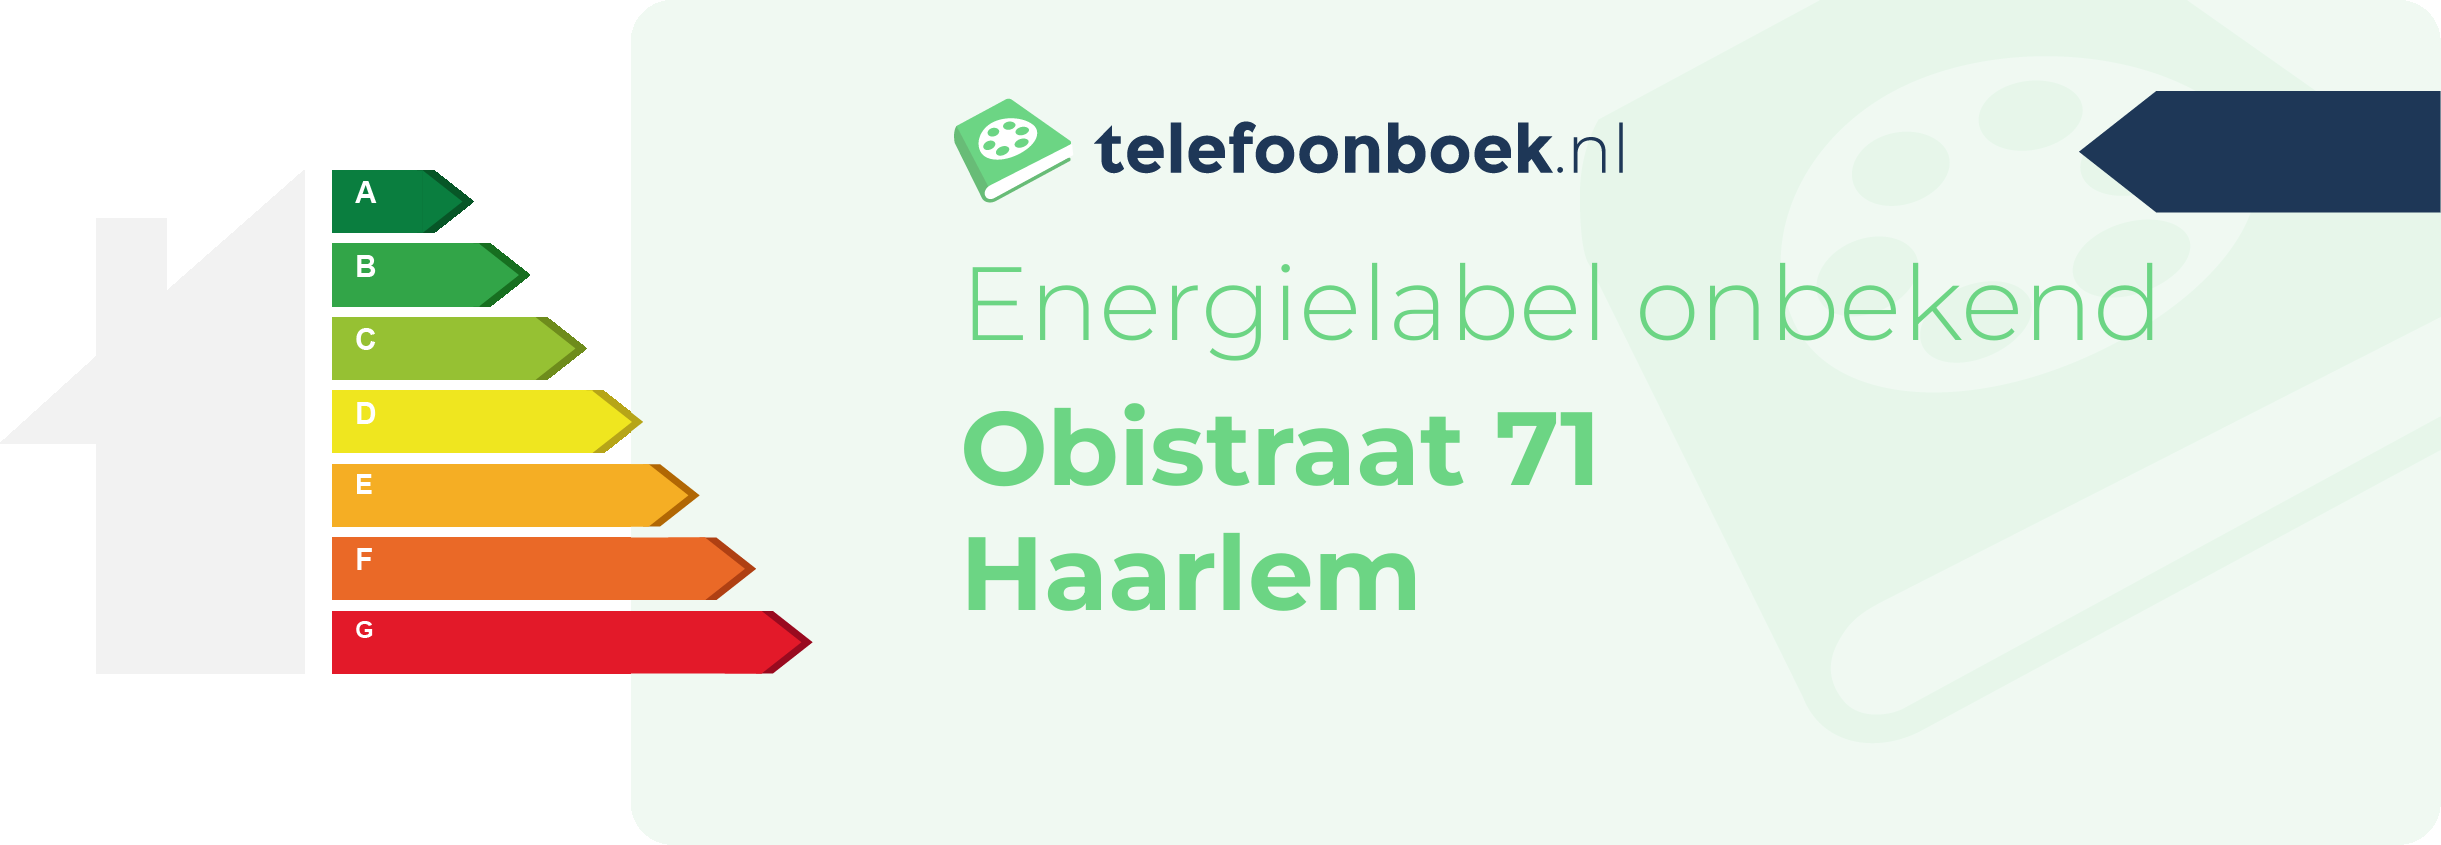 Energielabel Obistraat 71 Haarlem